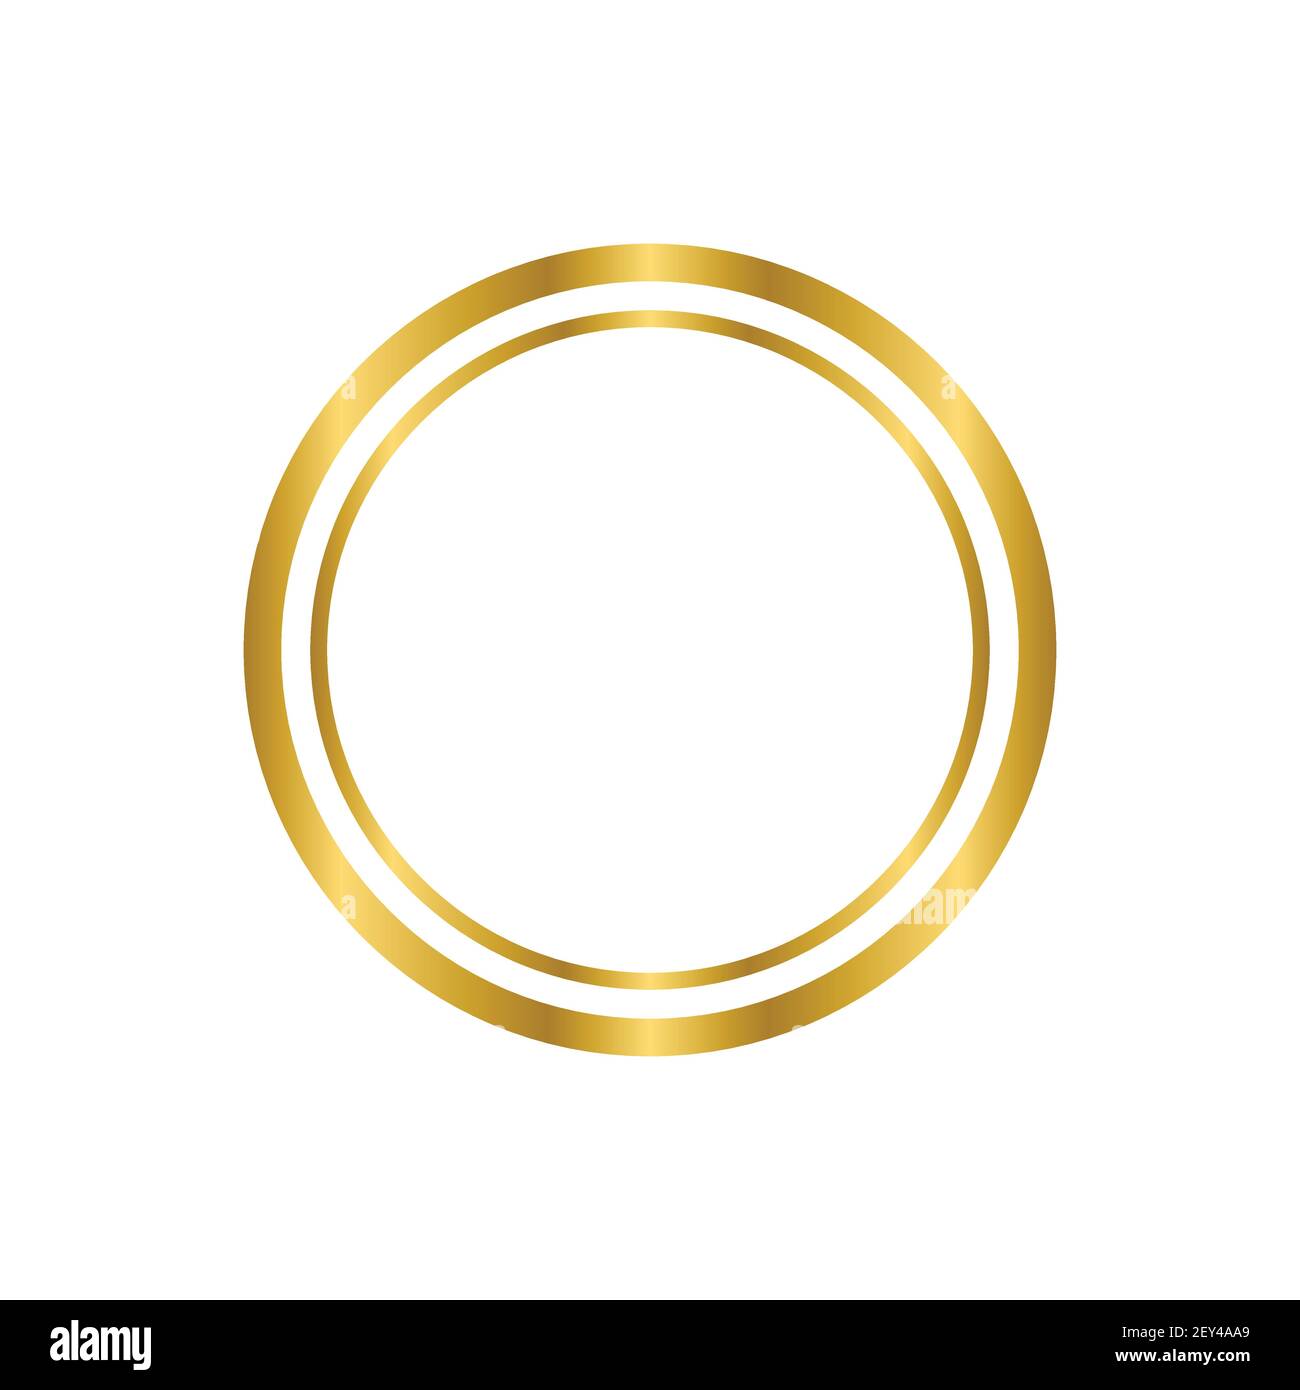 Khung tròn cổ điển vàng sáng bóng được cách ly trên nền trắng mang lại cho bạn sự sang trọng và quý phái. Hình ảnh này là sự kết hợp độc đáo giữa vẻ đẹp cổ điển và hiện đại. Hãy thưởng thức và cảm nhận sự hòa quyện của chúng.